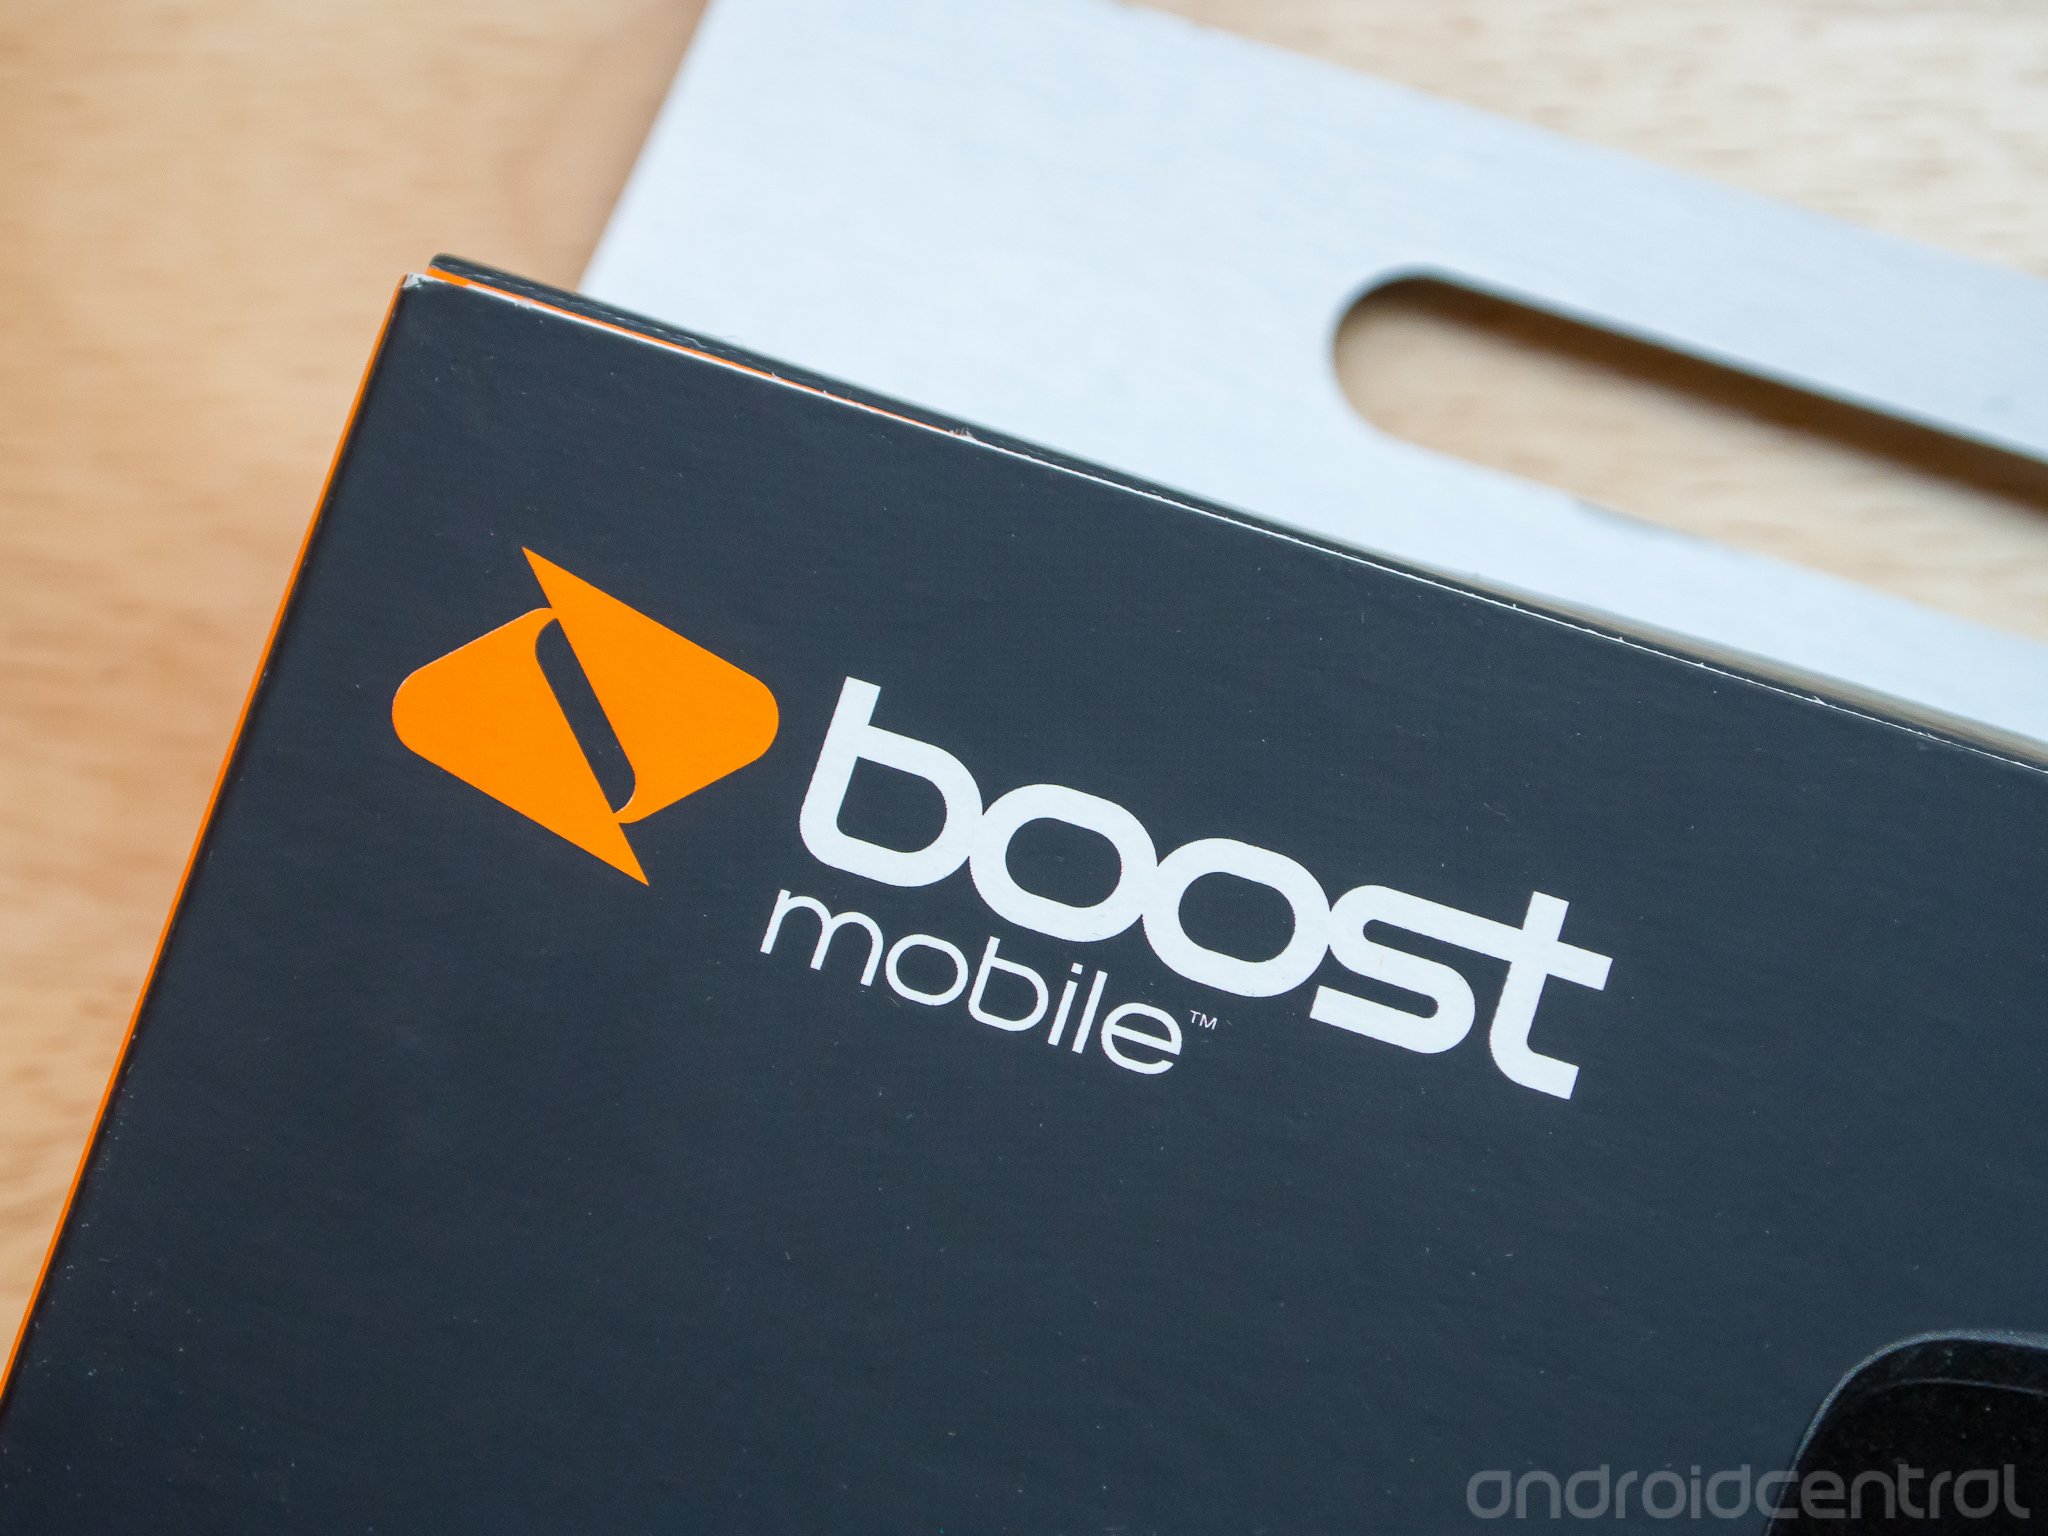 boost-mobile-logo-06.jpg